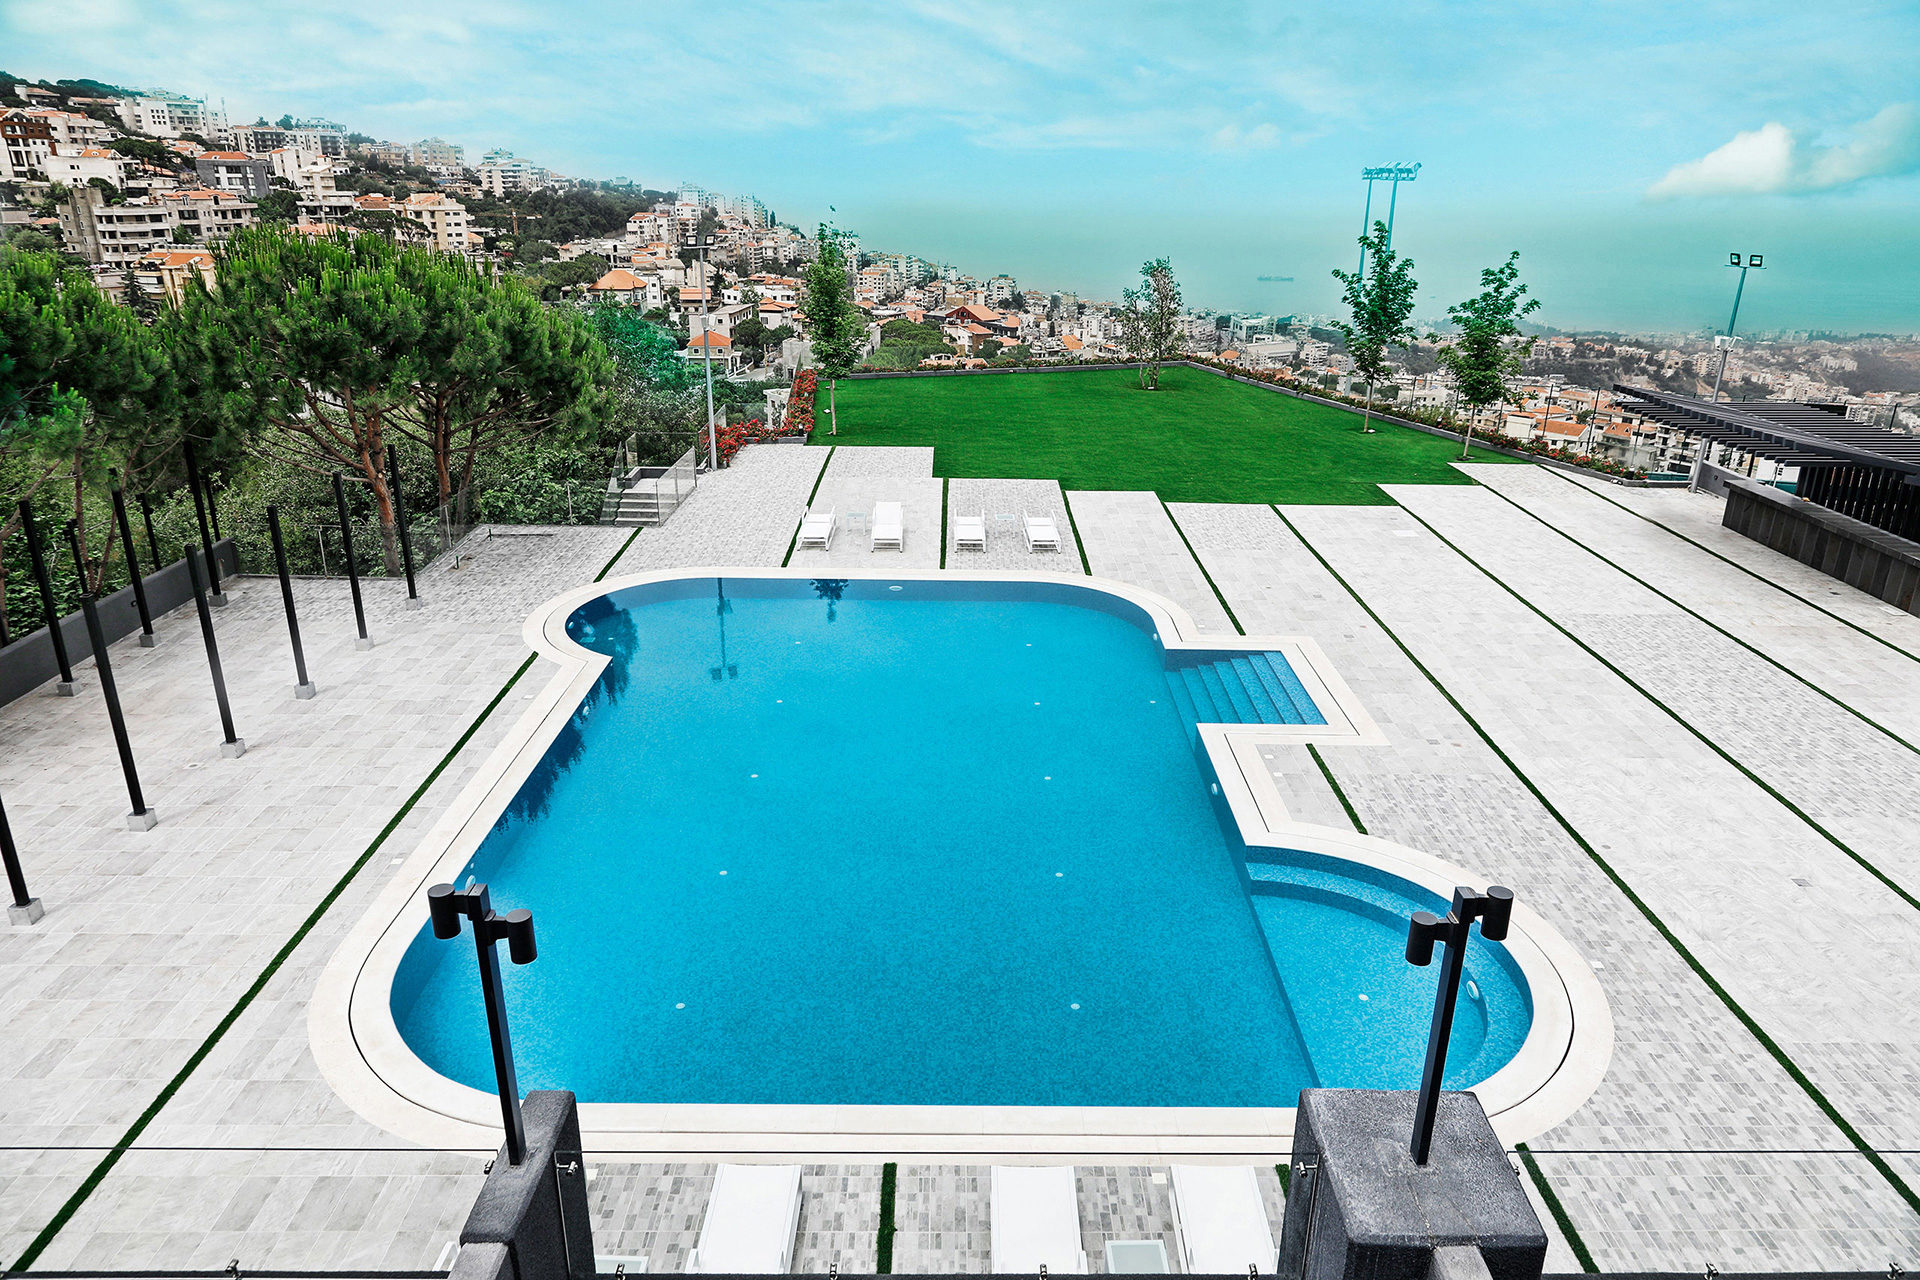 Le-Pave-Hotel-Lebanon-Beirut-Outside-Pool